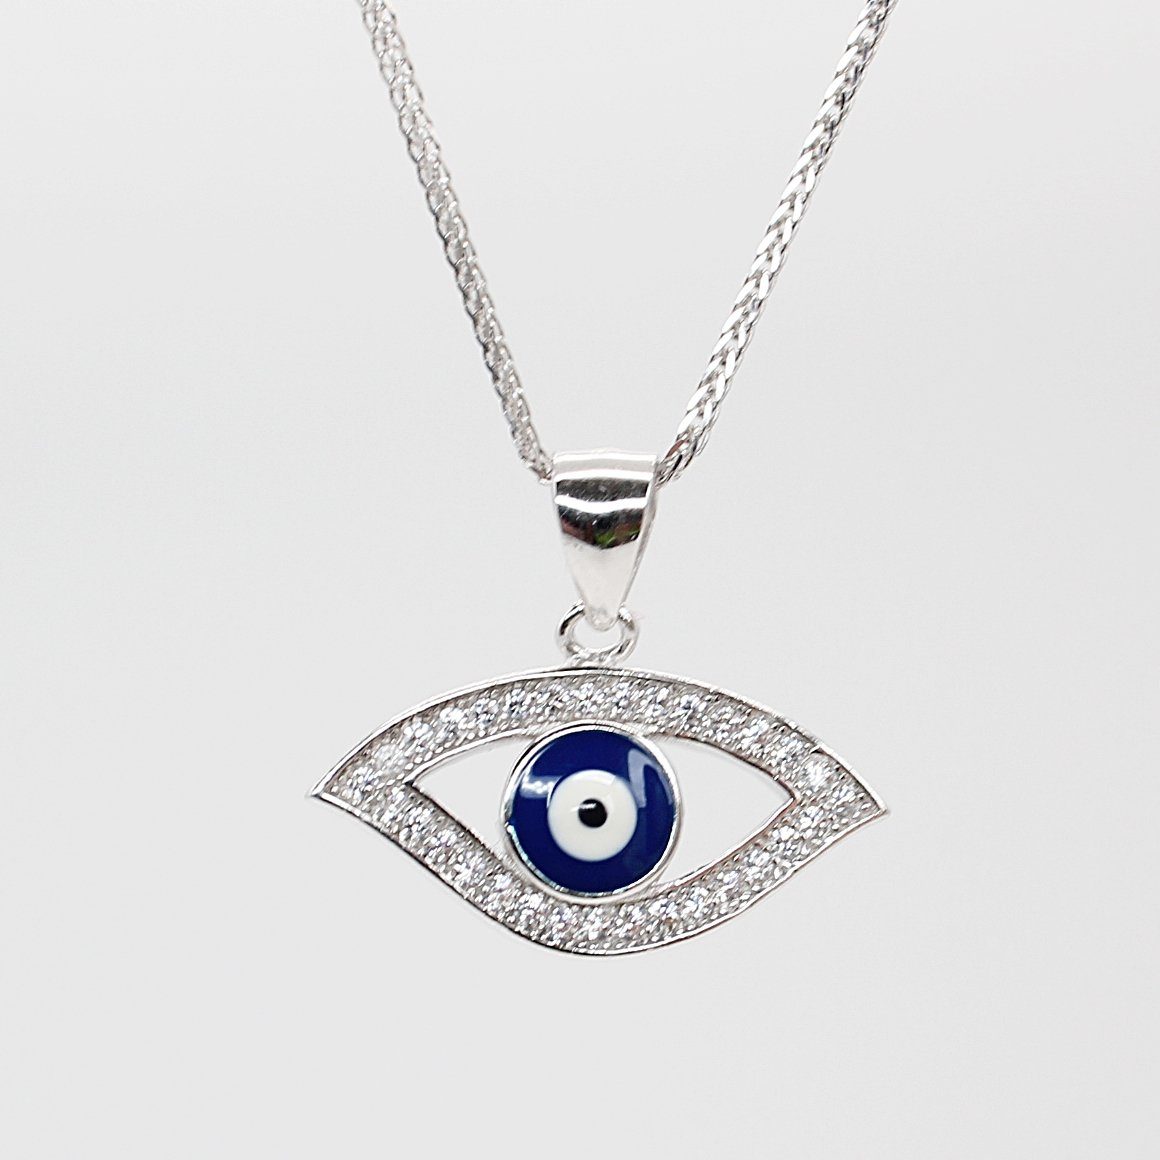 ELLAWIL Silberkette Kette mit Blue Eye Anhänger Nazar Amulett Zirkonia Halskette türkis (Kettenlänge 40 cm, Sterling Silber 925), inklusive Geschenkschachtel